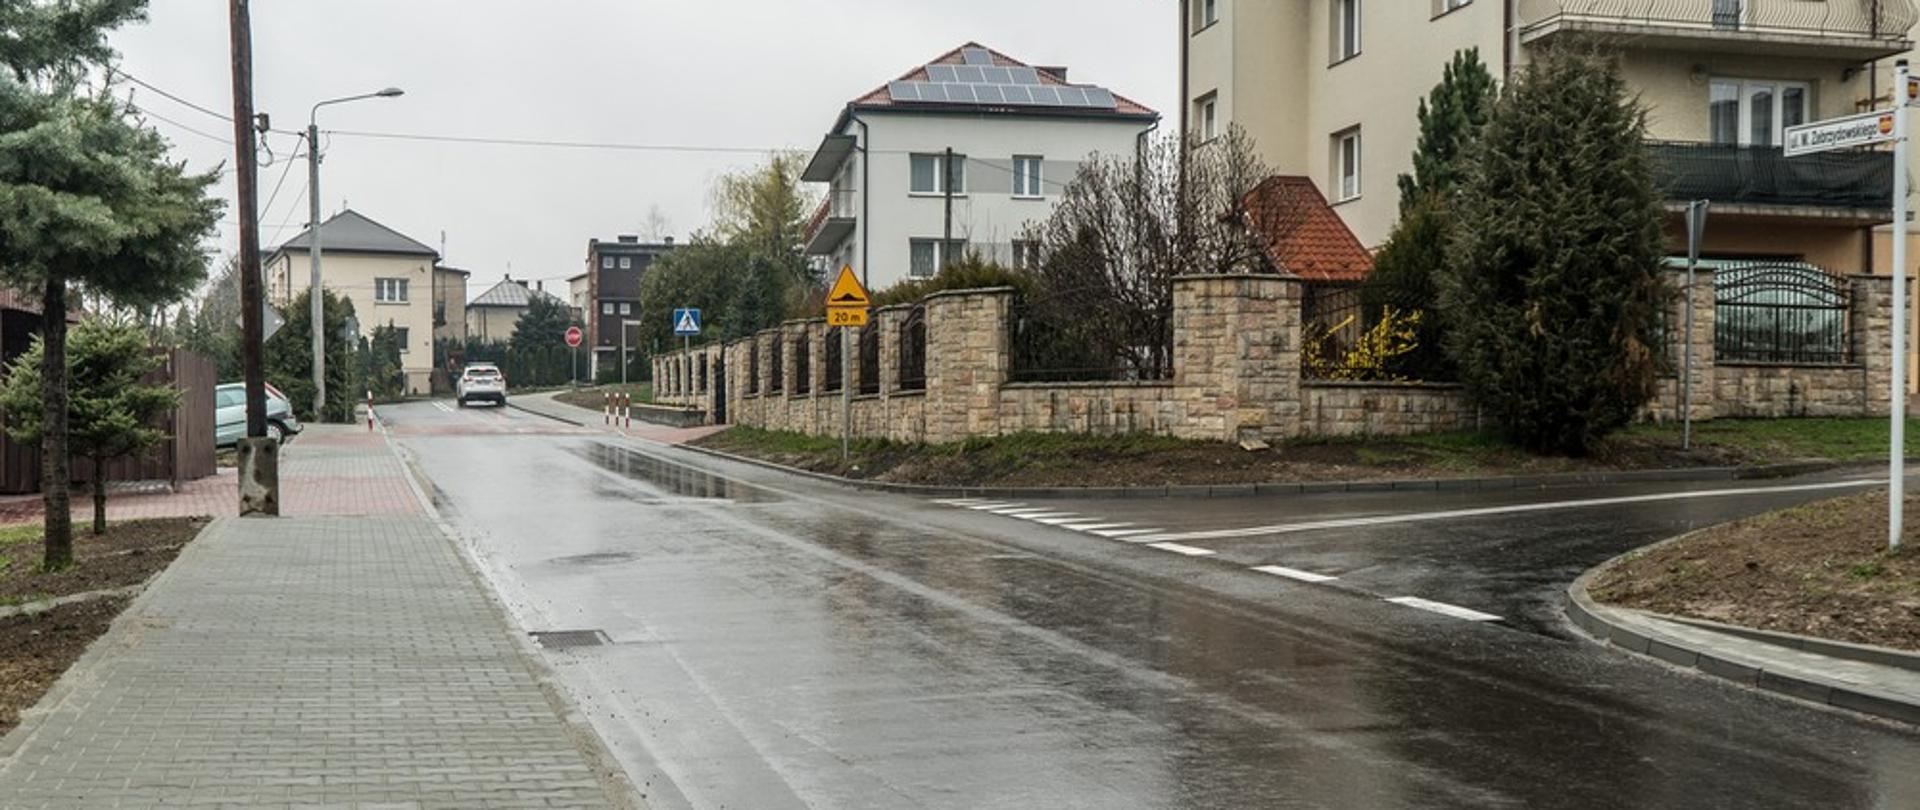 Ulica Piłsudskiego w Kalwarii Zebrzydowskiej. Po lewej stronie chodnik z prawej strony oraz w tle domy jednorodzinne.